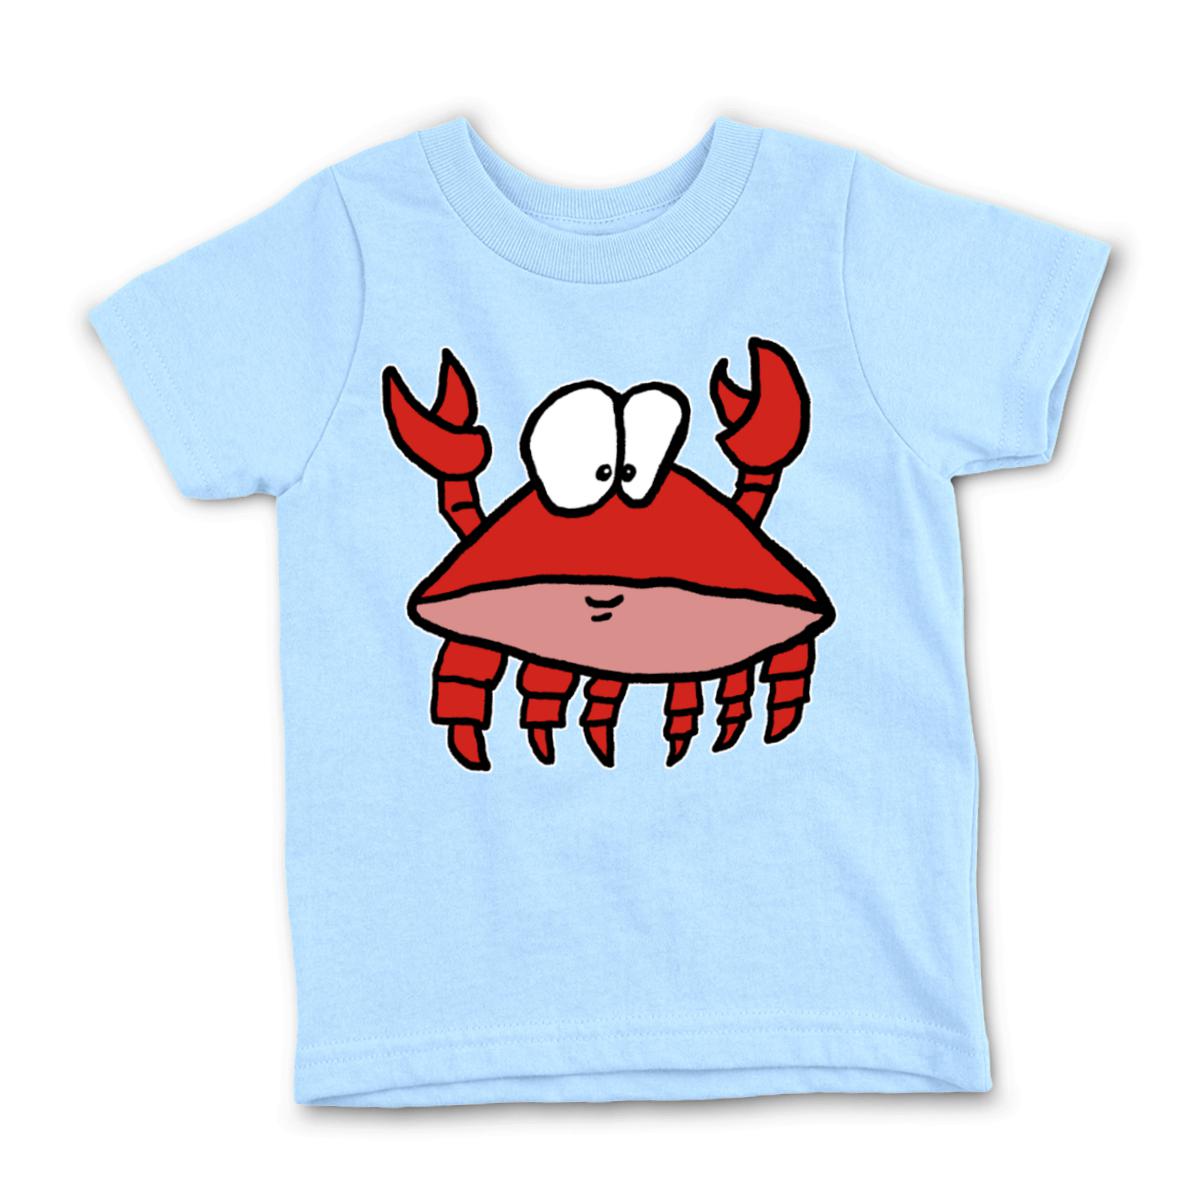 Crab 2.0 Kid's Tee Large light-blue